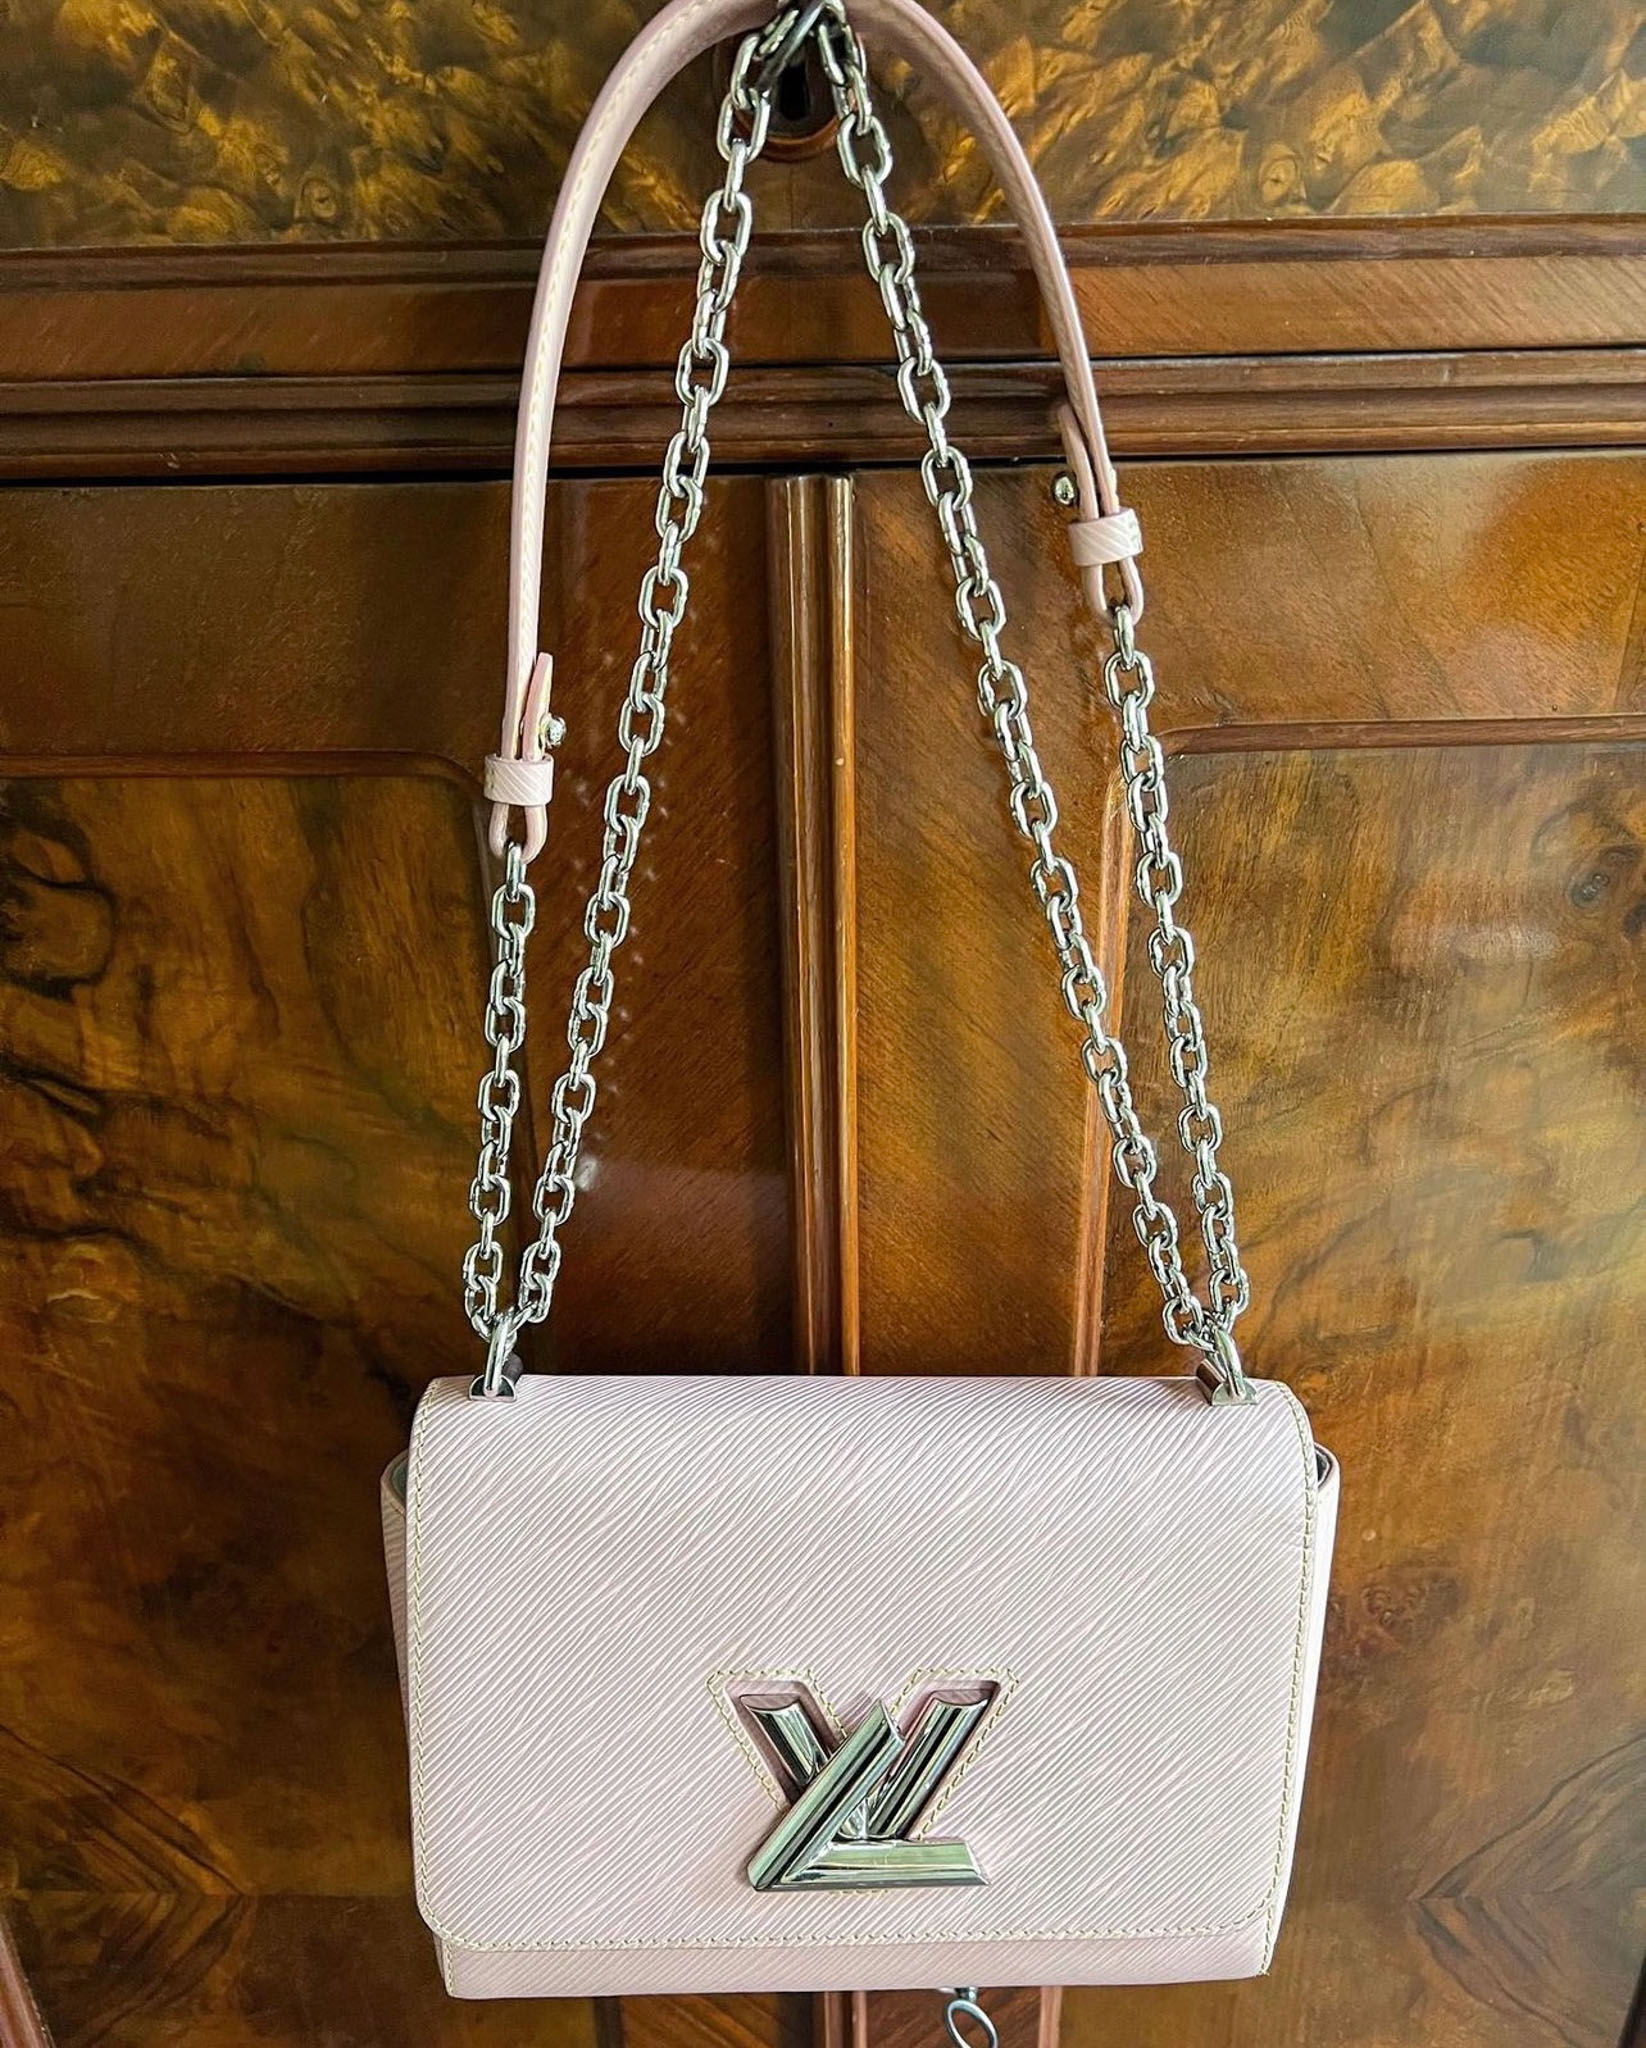 Would you buy a Louis Vuitton bag? - Quora